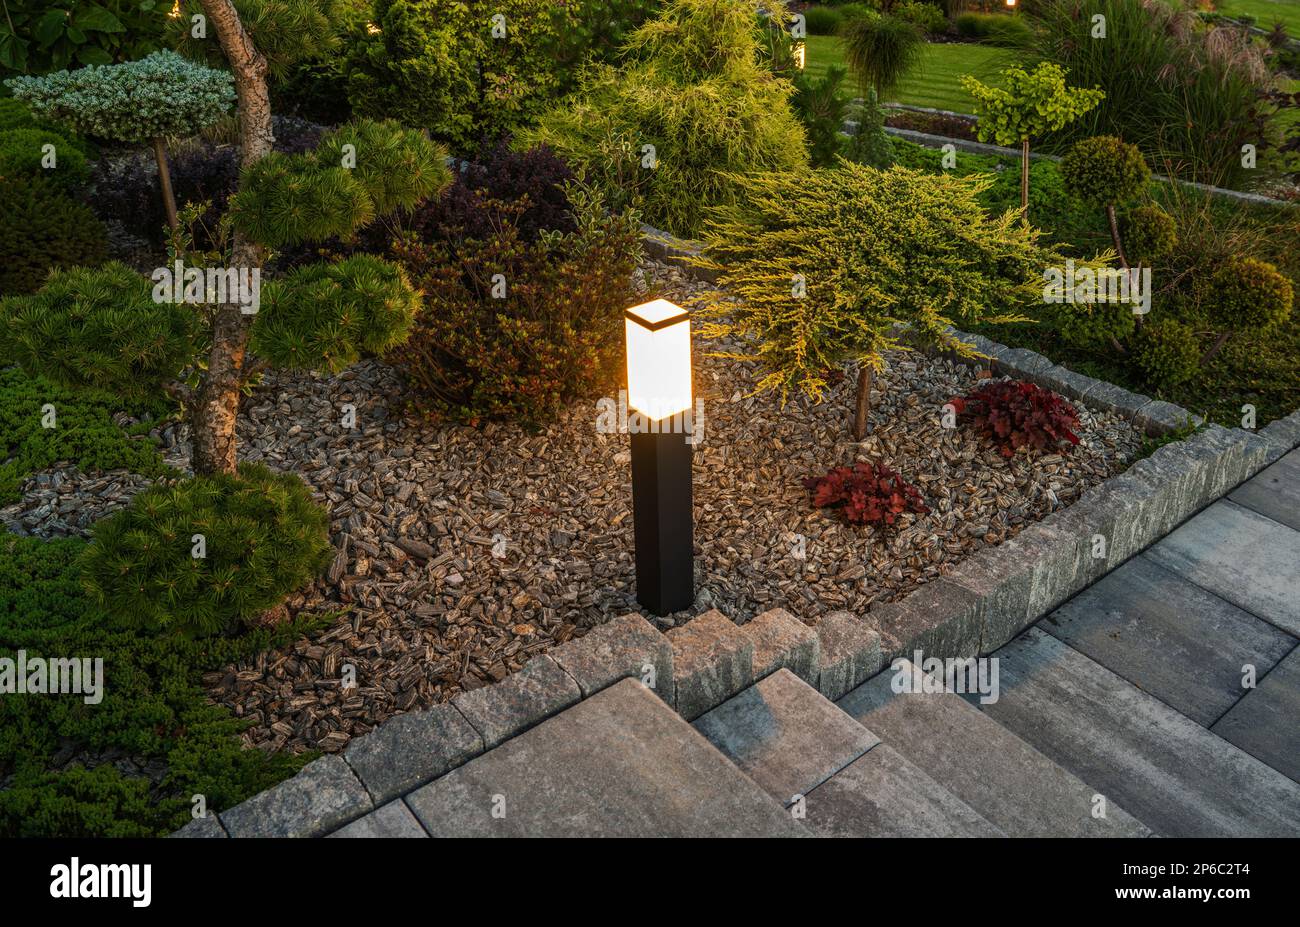 Nuit dans le jardin pittoresque de Rockery illuminé par des lumières d'extérieur carrées à DEL modernes Banque D'Images